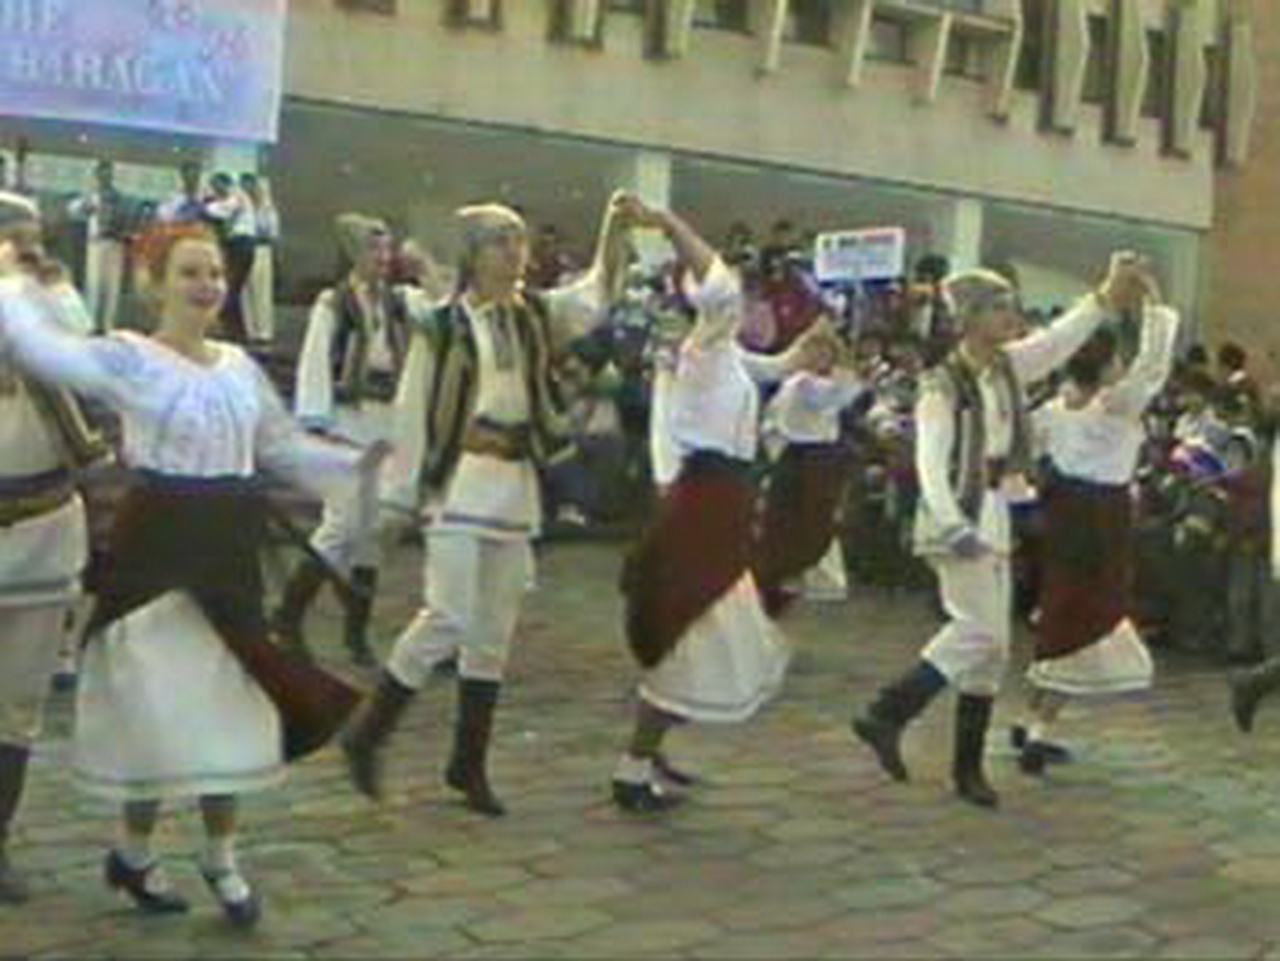 1996 - Ansamblul folcloric “Vantuletul” si orchestra Barbu Lautaru - R. Moldova